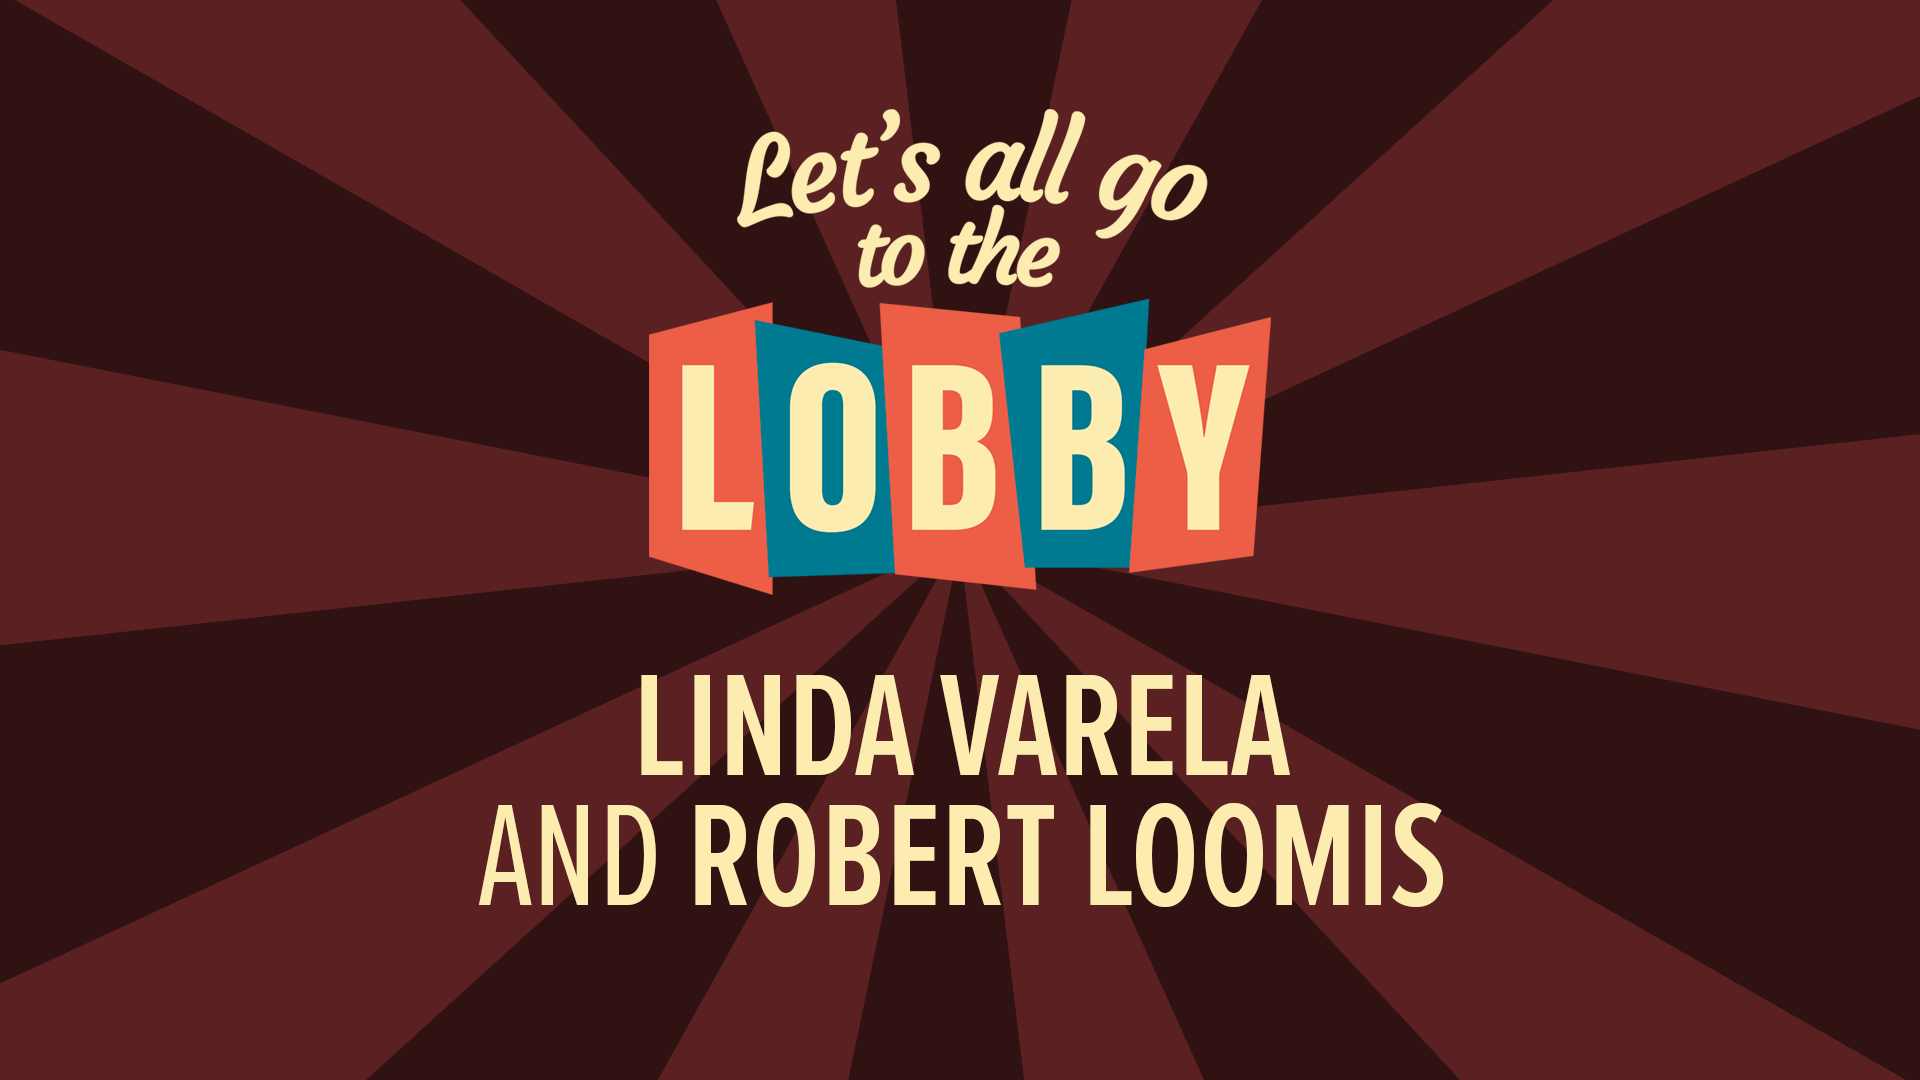 Today's Guests: Linda Varela and Robert Loomis